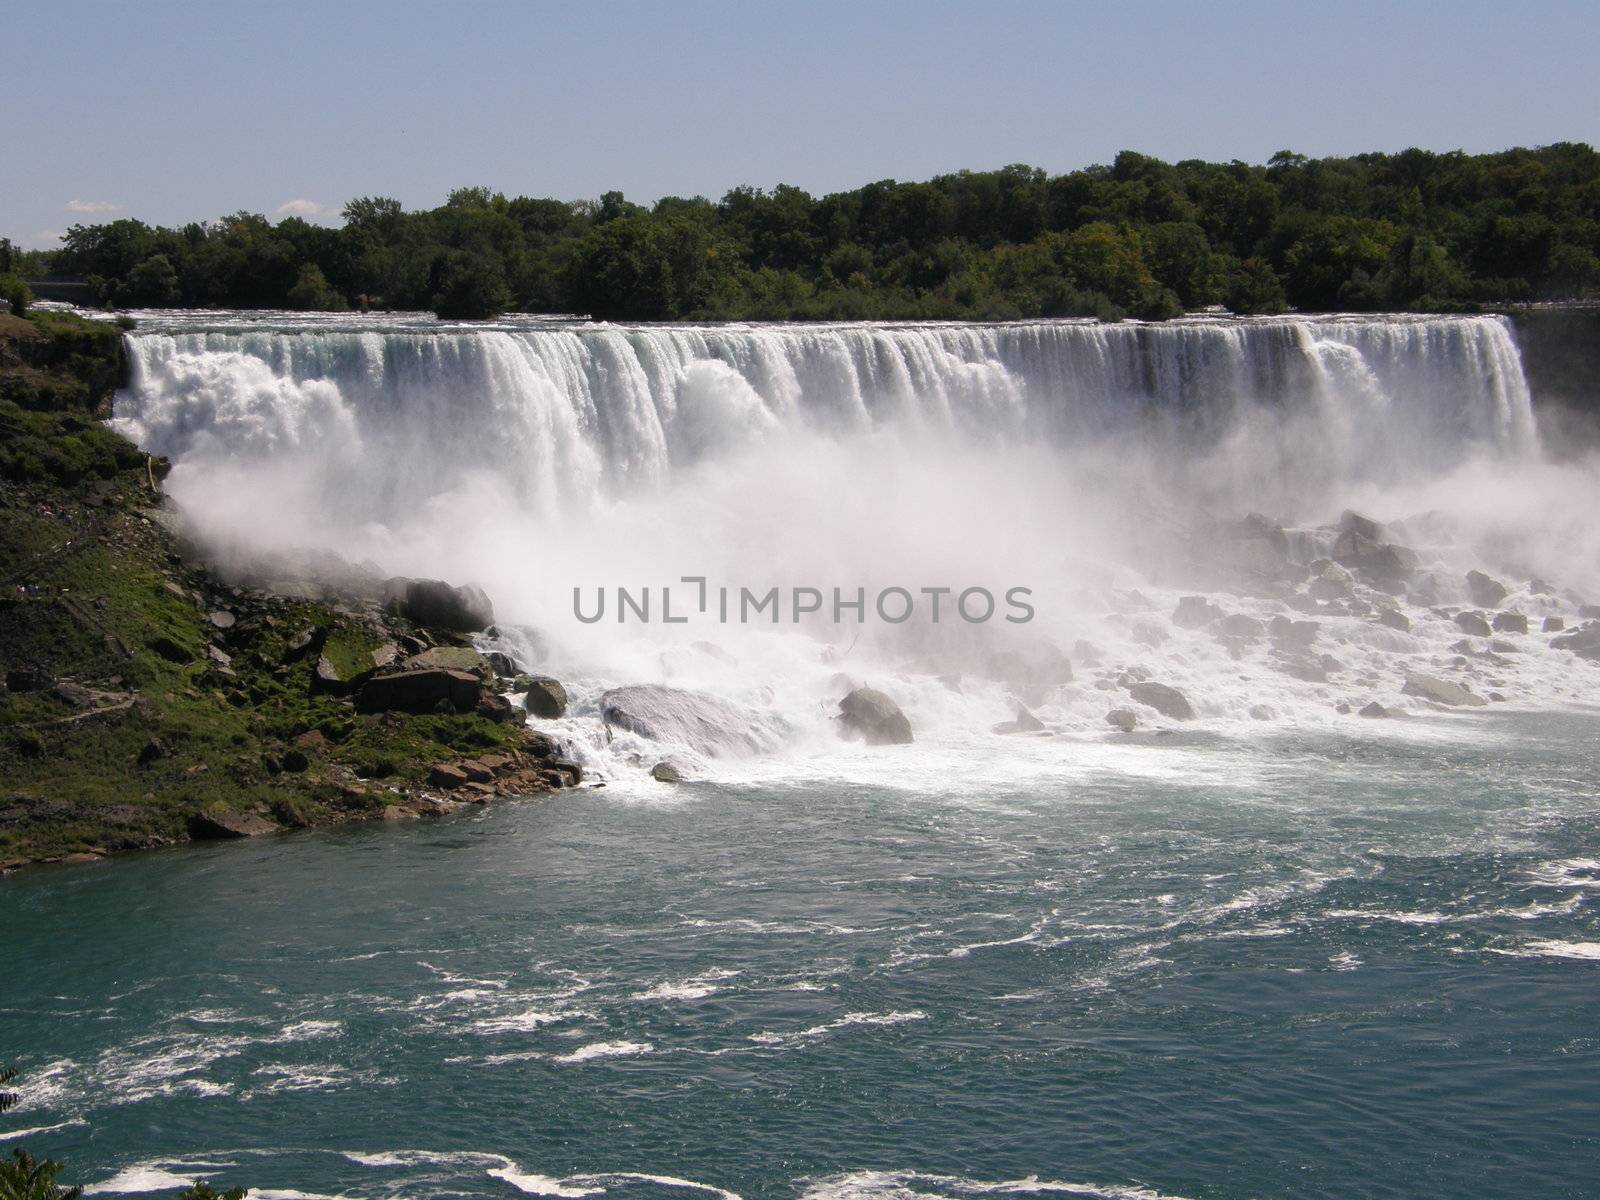 Niagara Falls at the border of USA and Canada